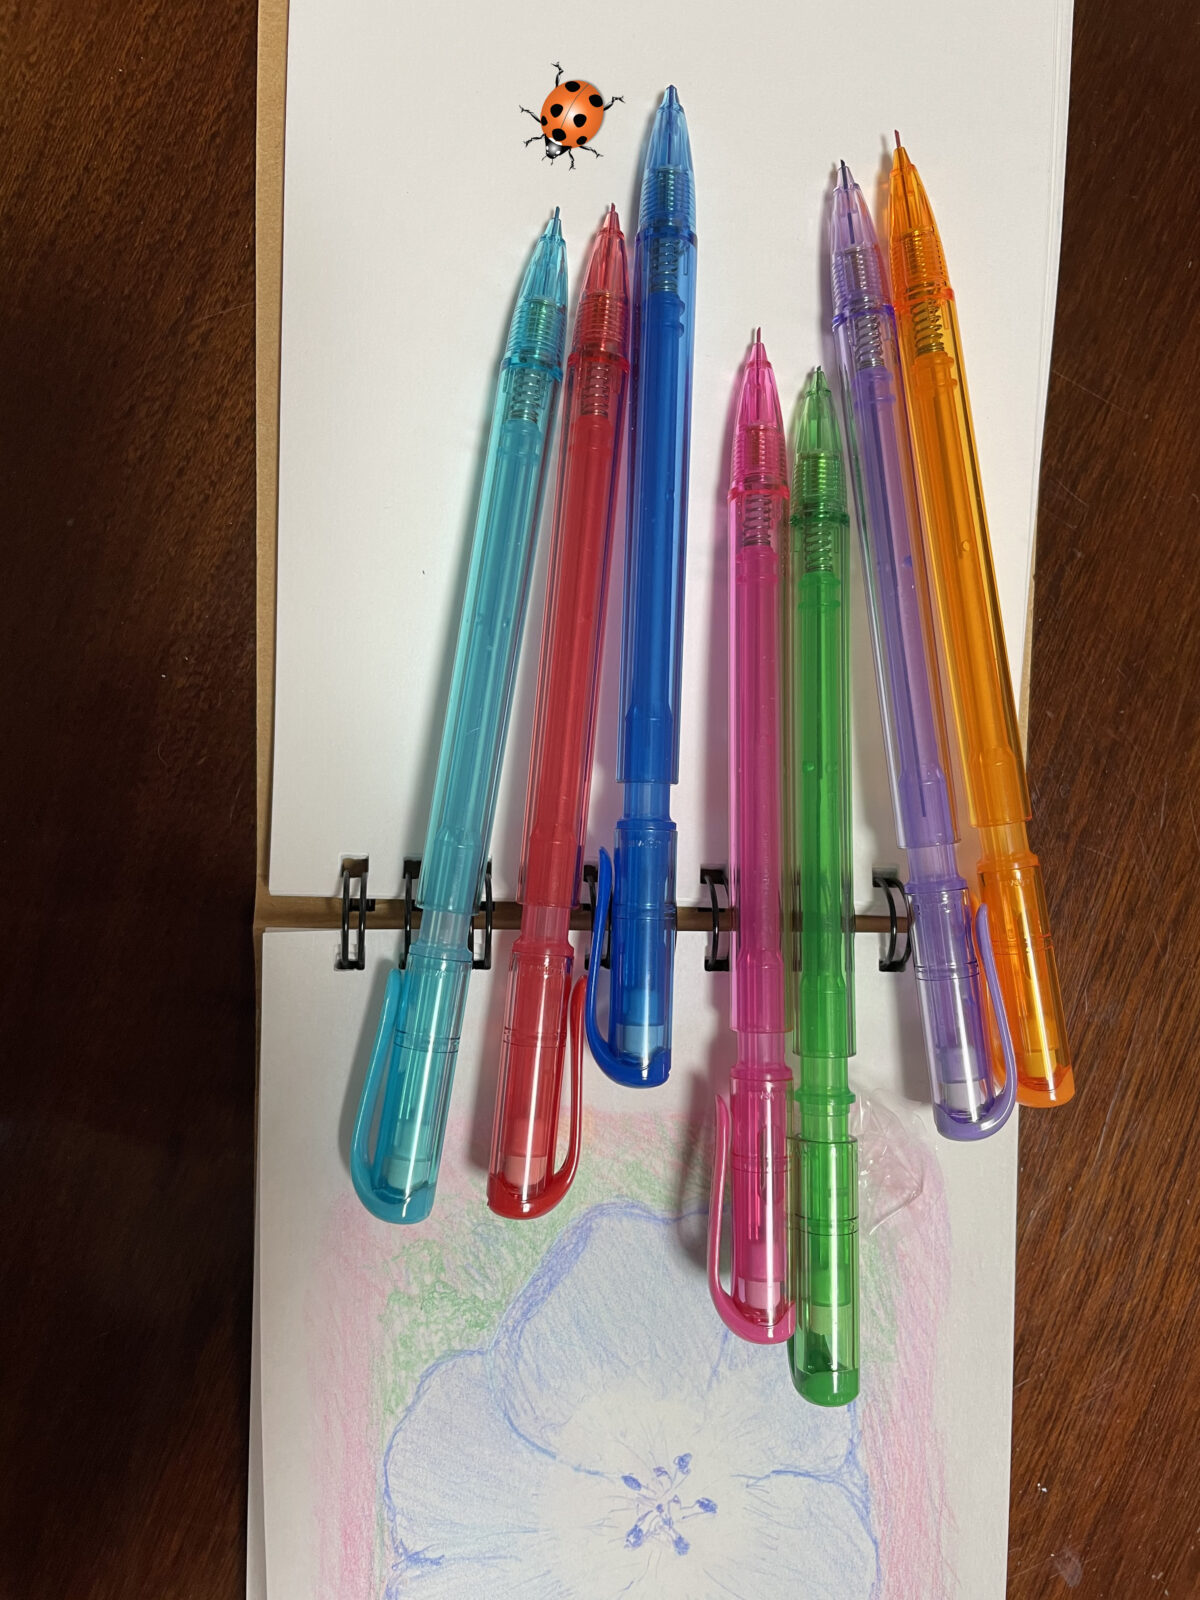 カラー芯シャープ 春は絵を描きたくなる季節です 新しい書き味の色鉛筆です